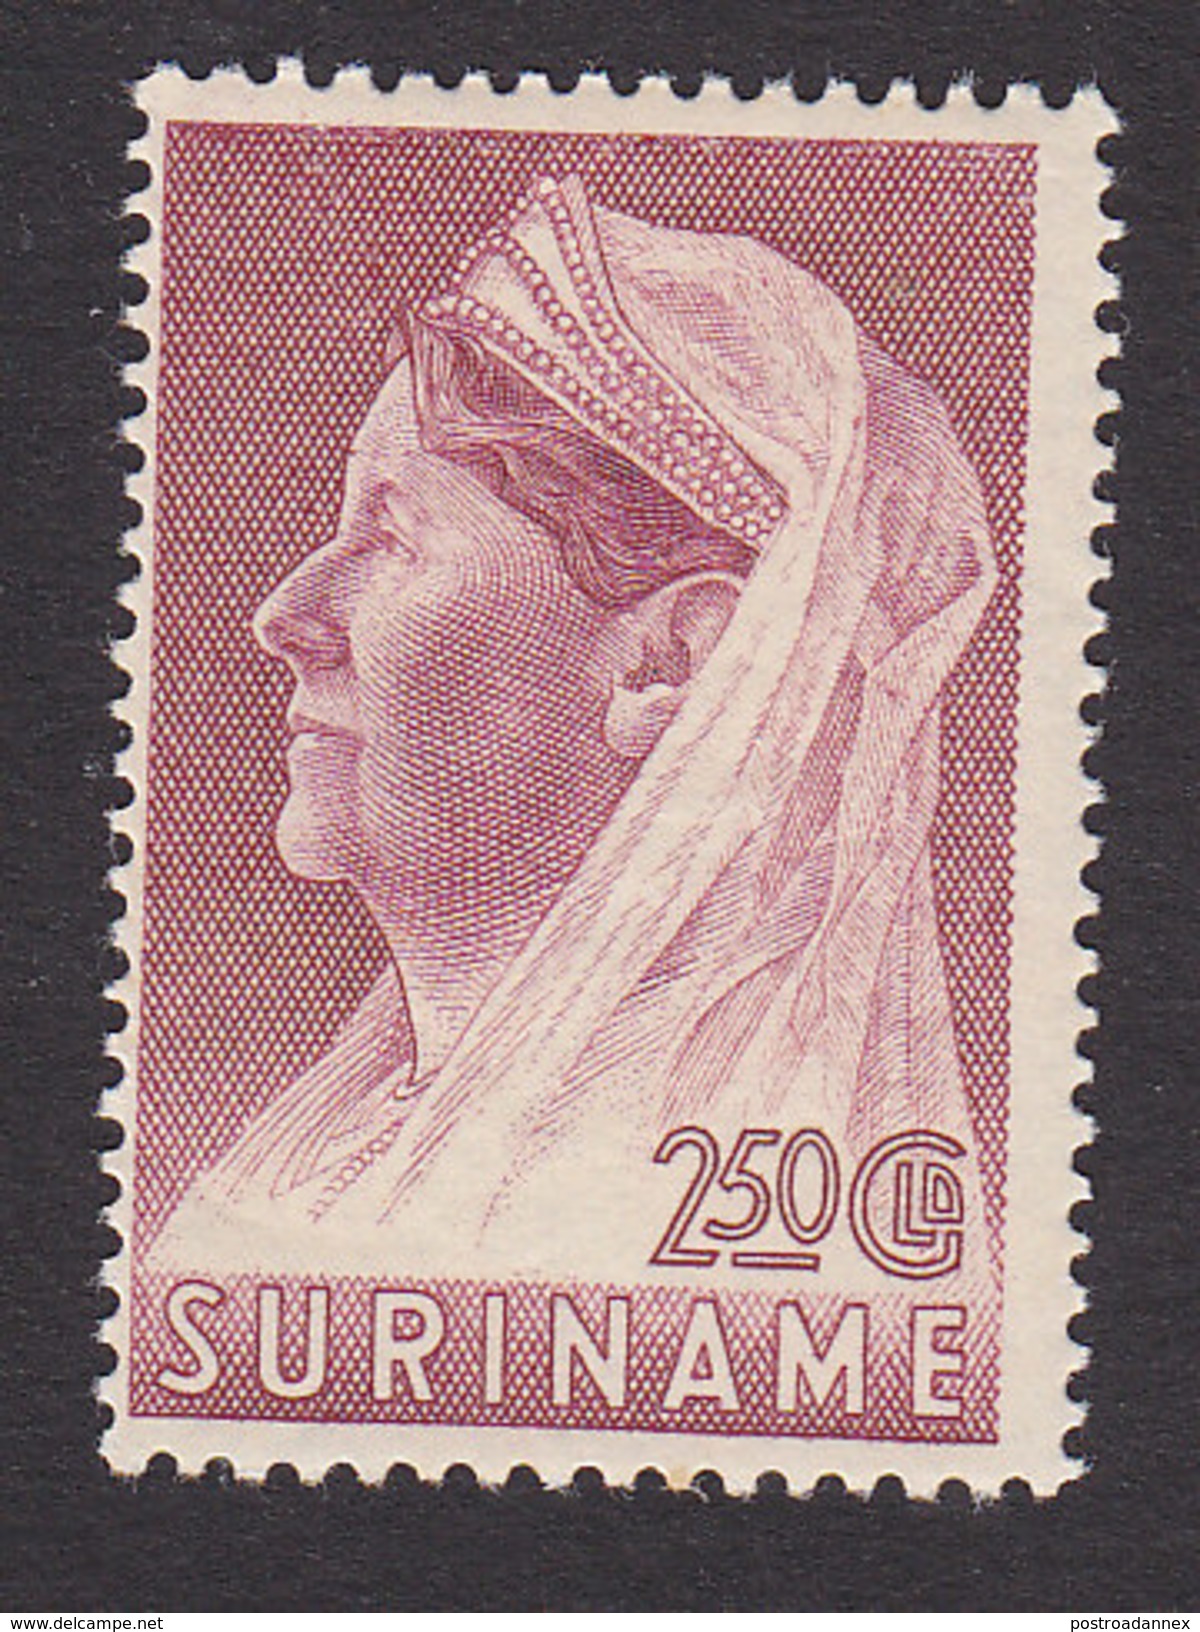 Surinam, Scott #163, Mint Hinged, Queen Wilhelmina, Issued 1936 - Surinam